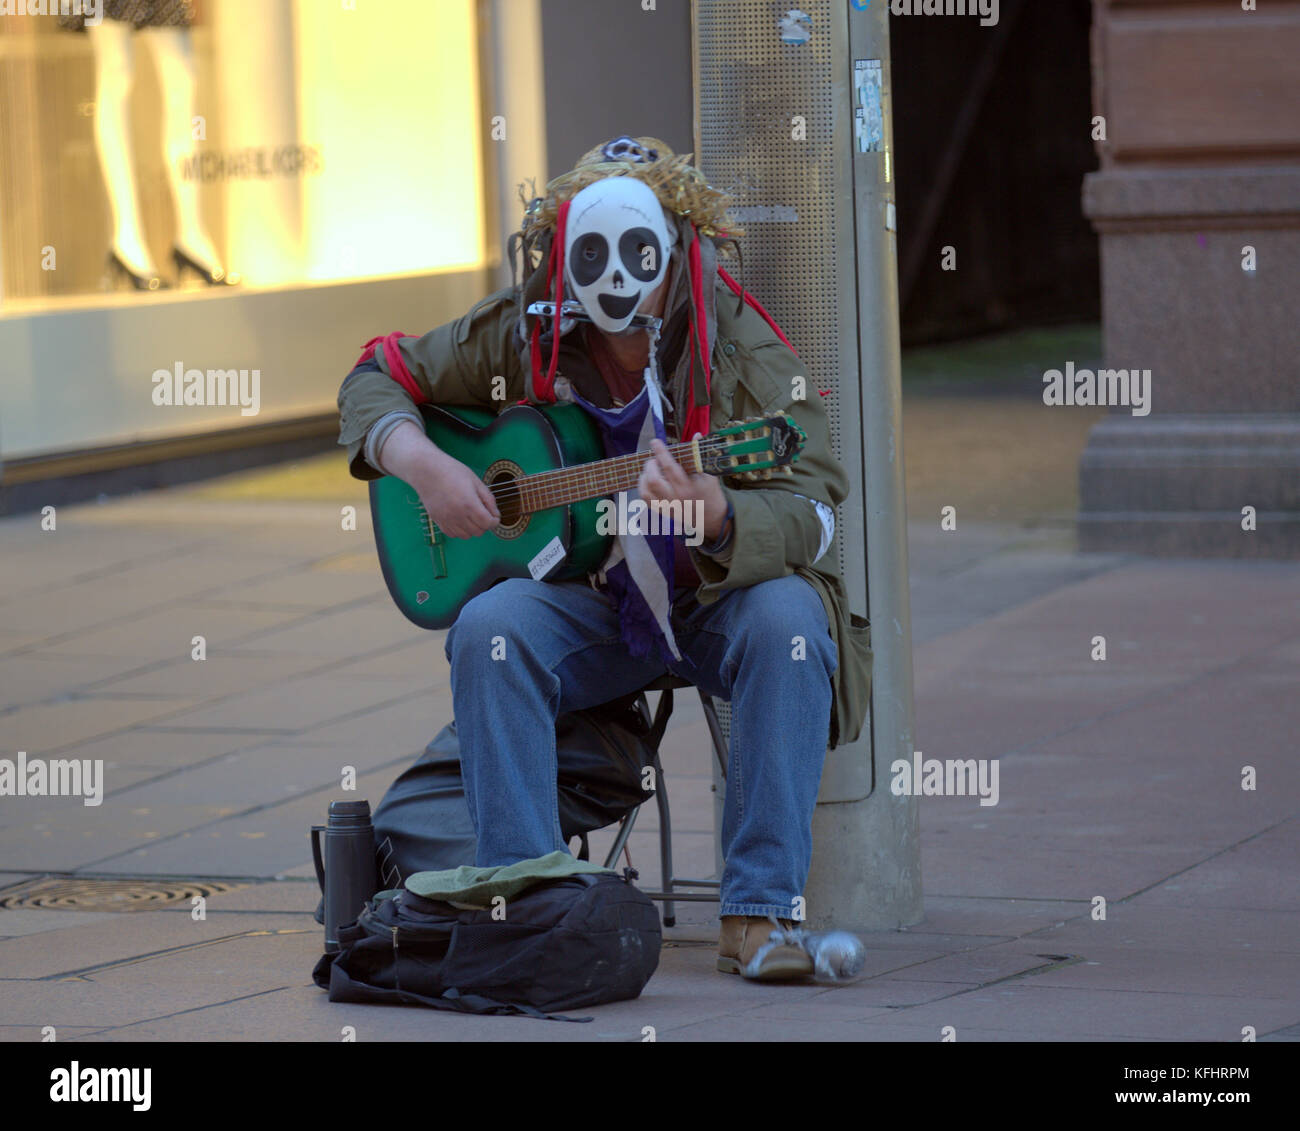 Glasgow, Ecosse, Royaume-Uni. 29 octobre. Musicien ambulant avec guitare verte et masque. L'halloween dans les rues de la ville présente certains monuments tous les jours différemment. crédit Gérard ferry/Alamy news Banque D'Images